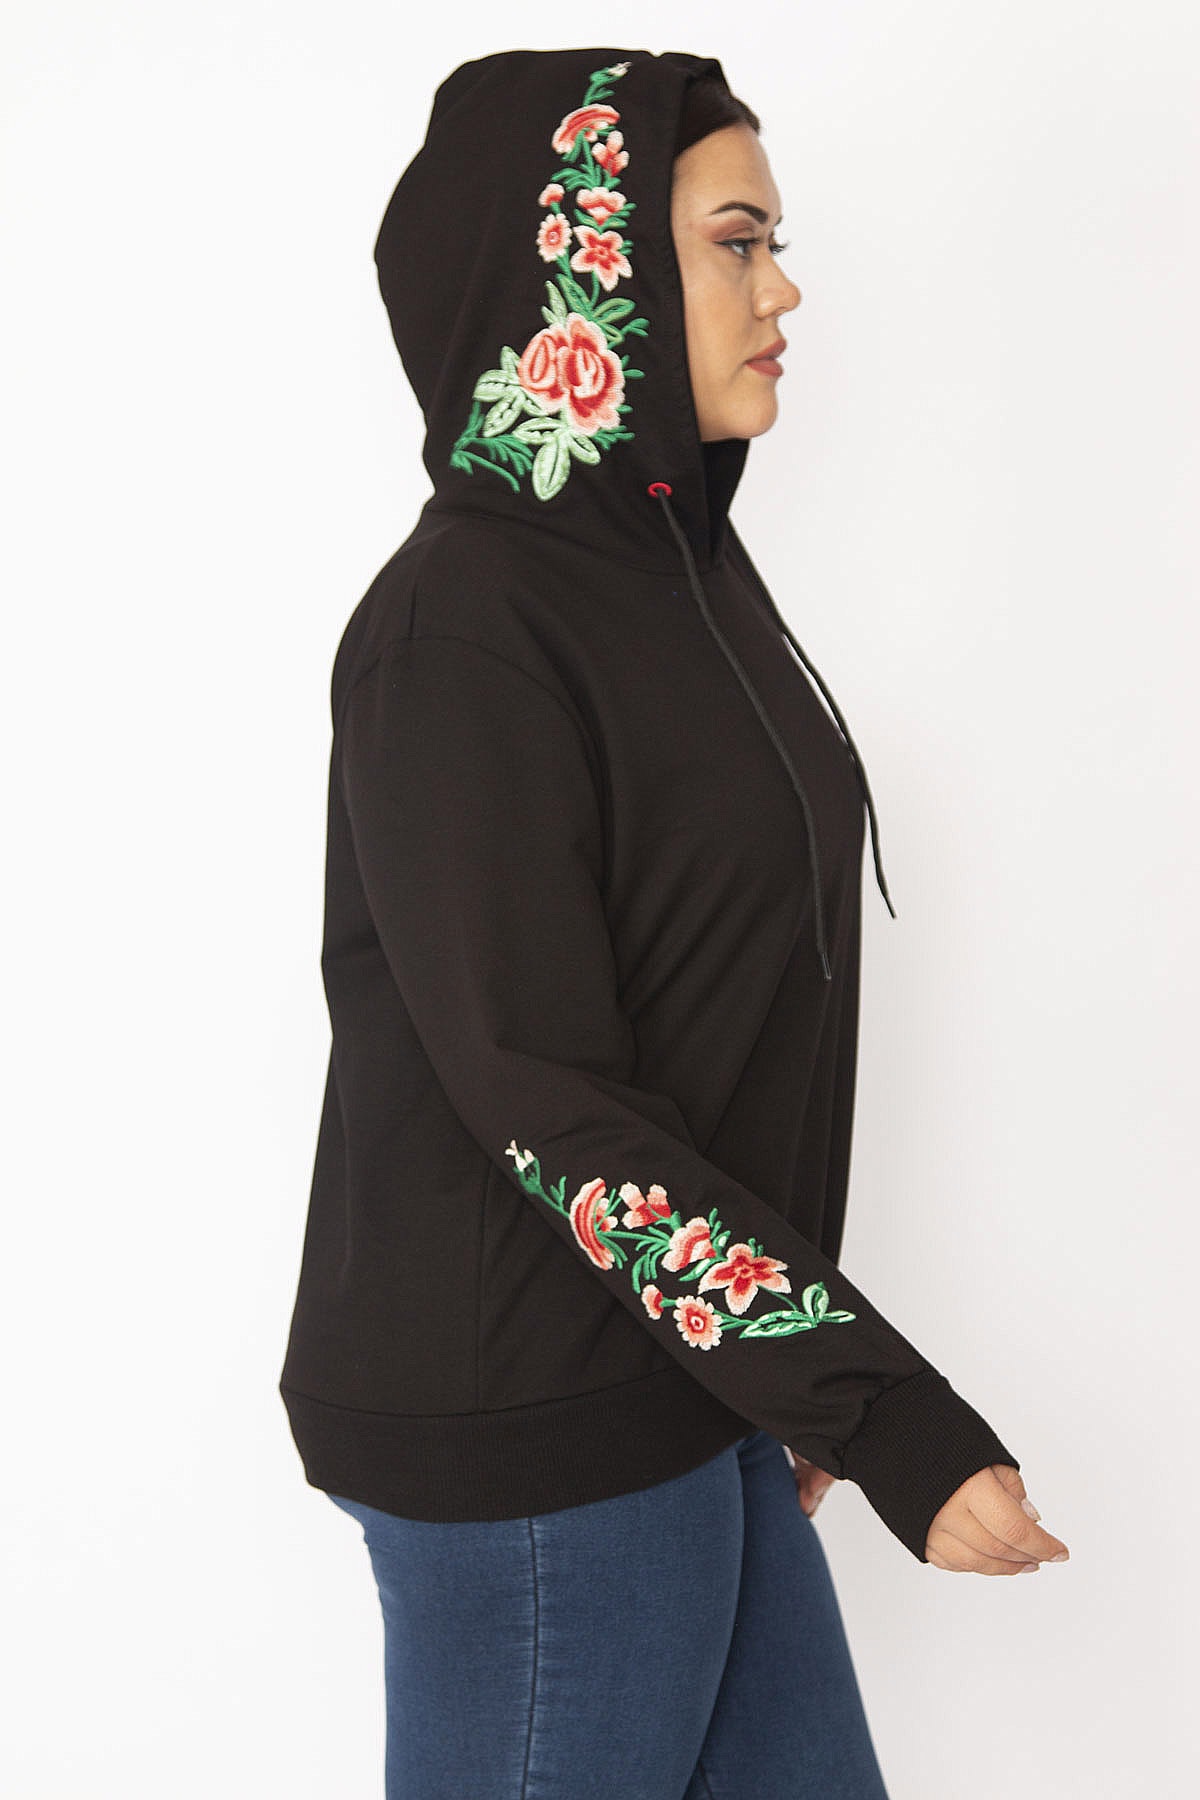 Женская черная толстовка с капюшоном большого размера с вышивкой 65n28356 Şans, черный женская толстовка с капюшоном зимняя большого размера с принтом бабочек